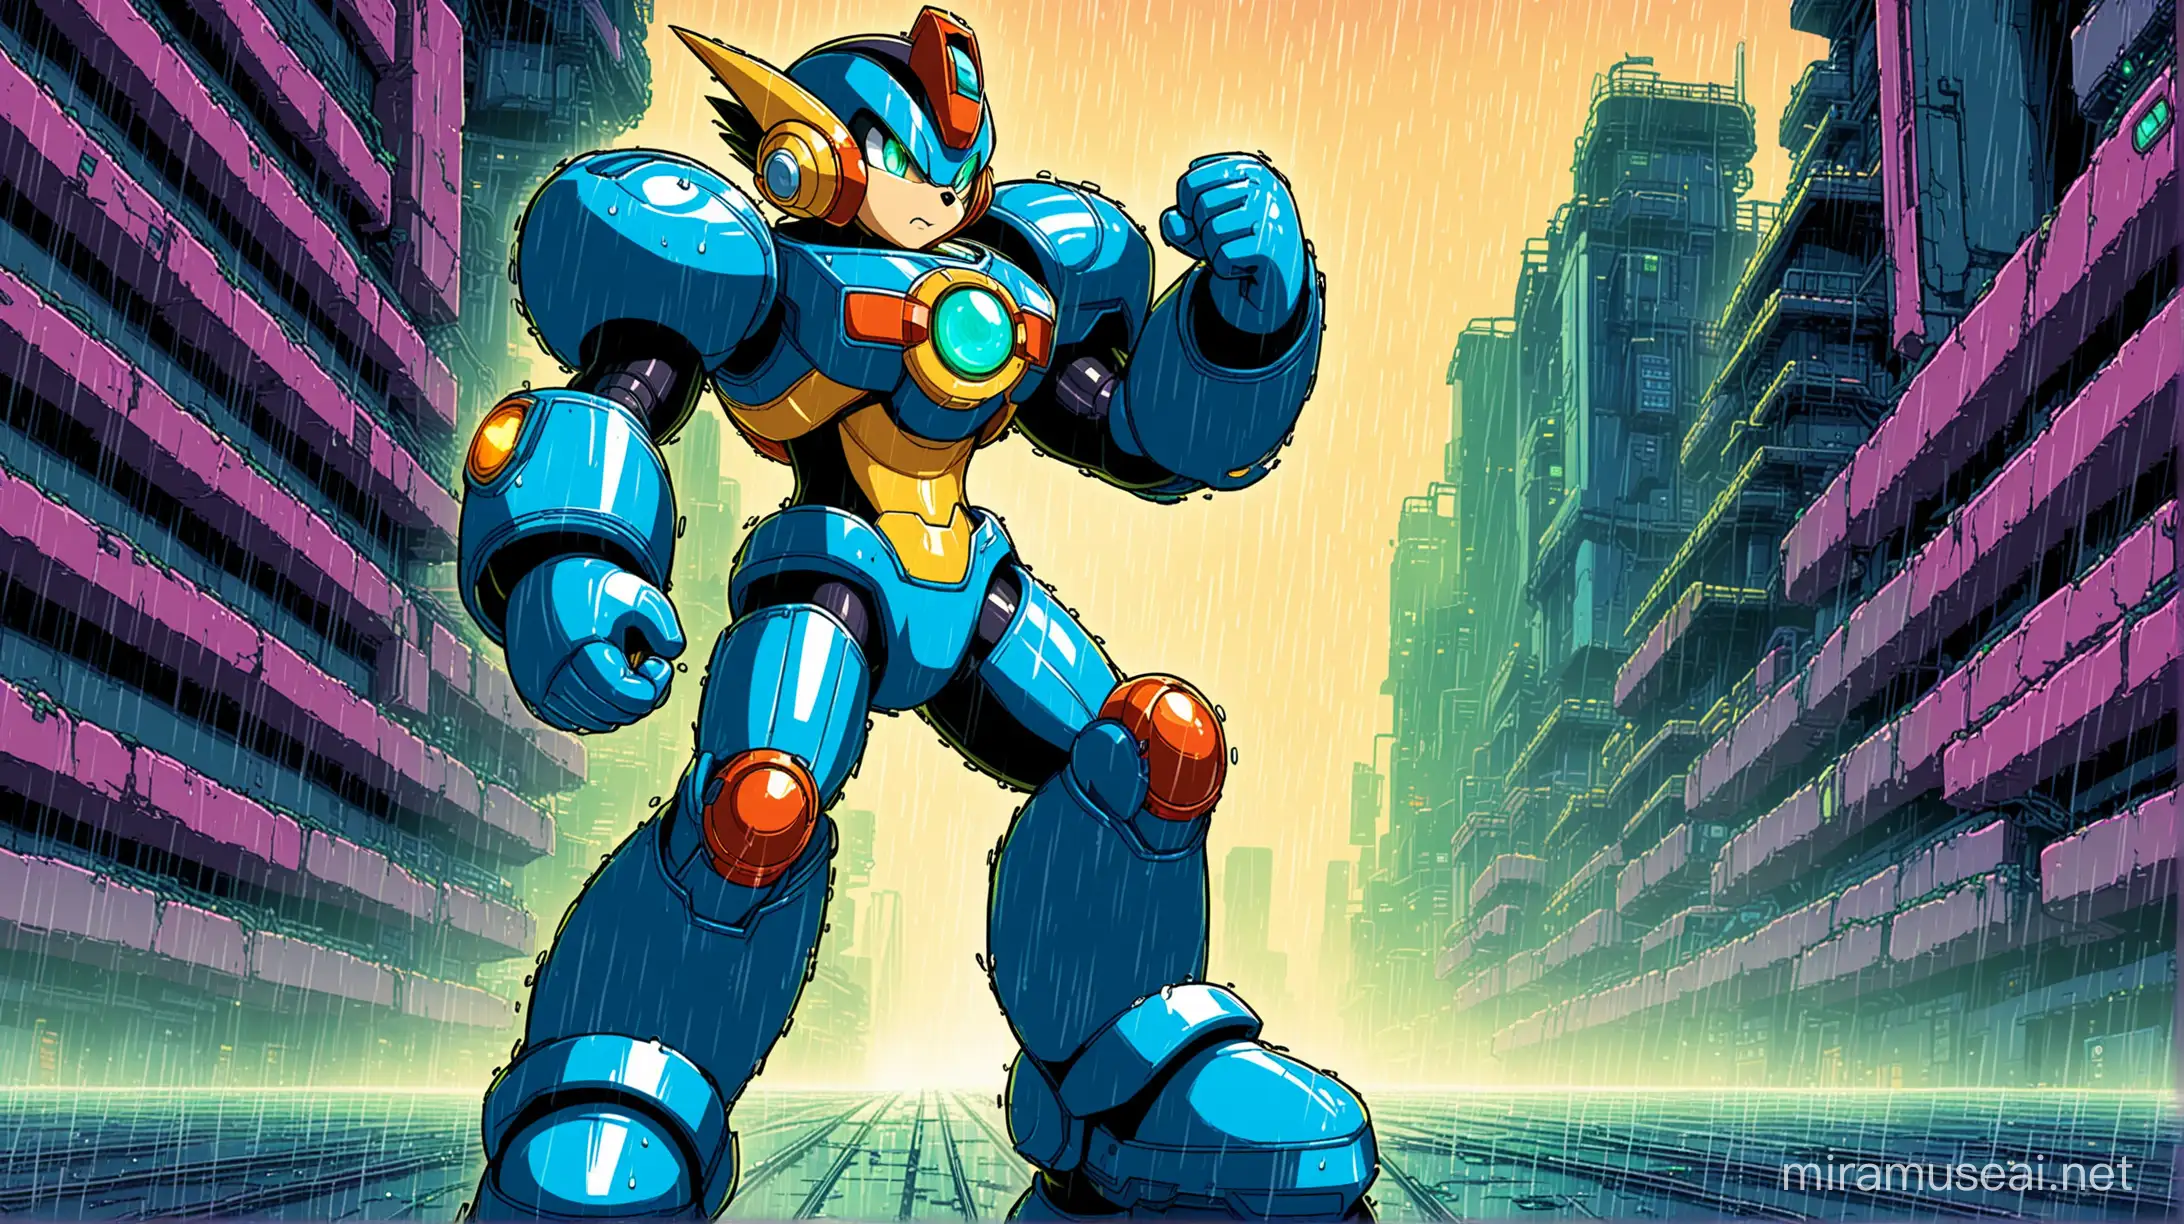 Cyberpunk Dystopia Mega Man Battle Network 6 Cyber Beast Gregar in Raining Cityscape